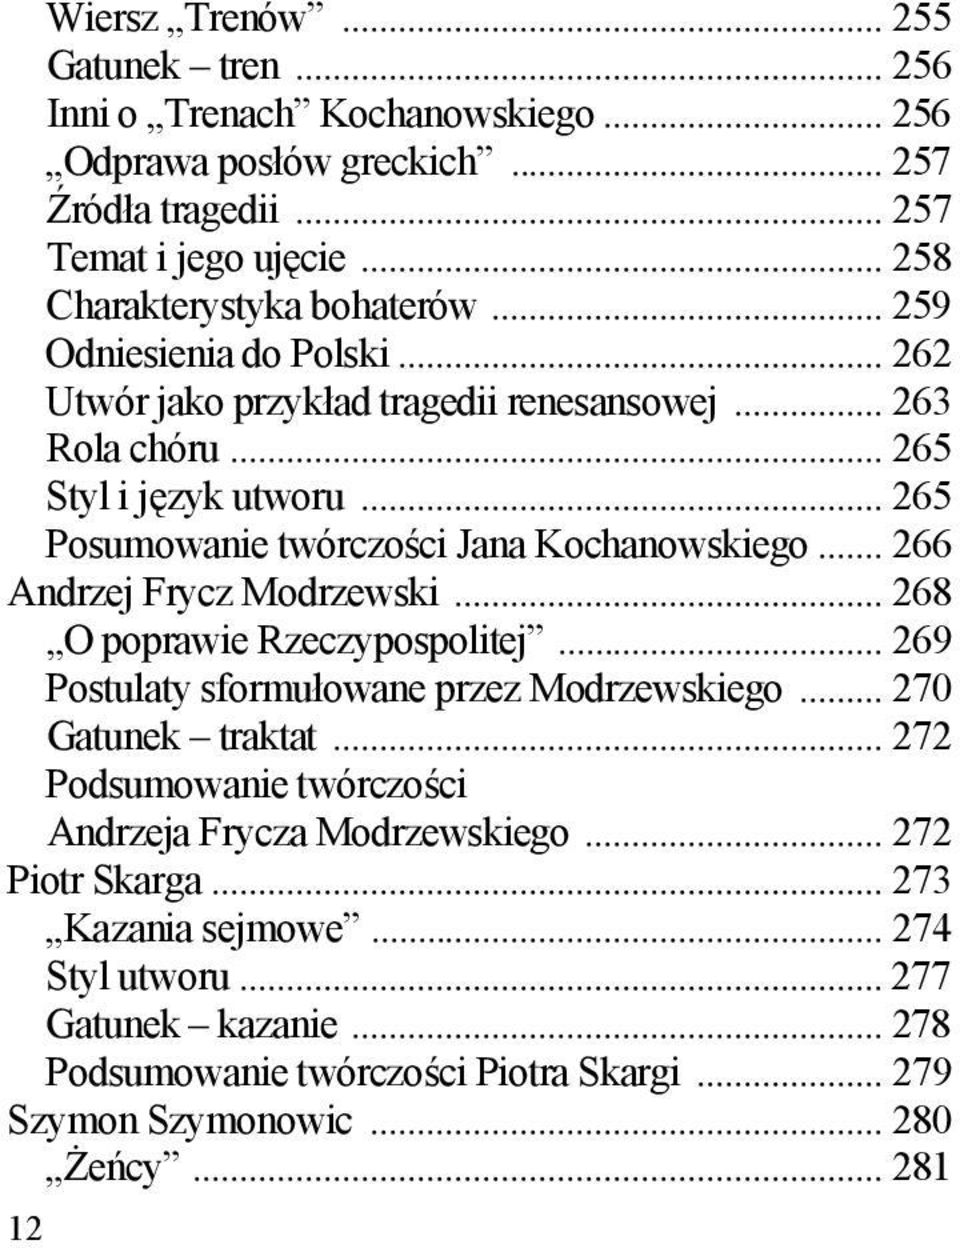 .. 266 Andrzej Frycz Modrzewski... 268 O poprawie Rzeczypospolitej... 269 Postulaty sformułowane przez Modrzewskiego... 270 Gatunek traktat.